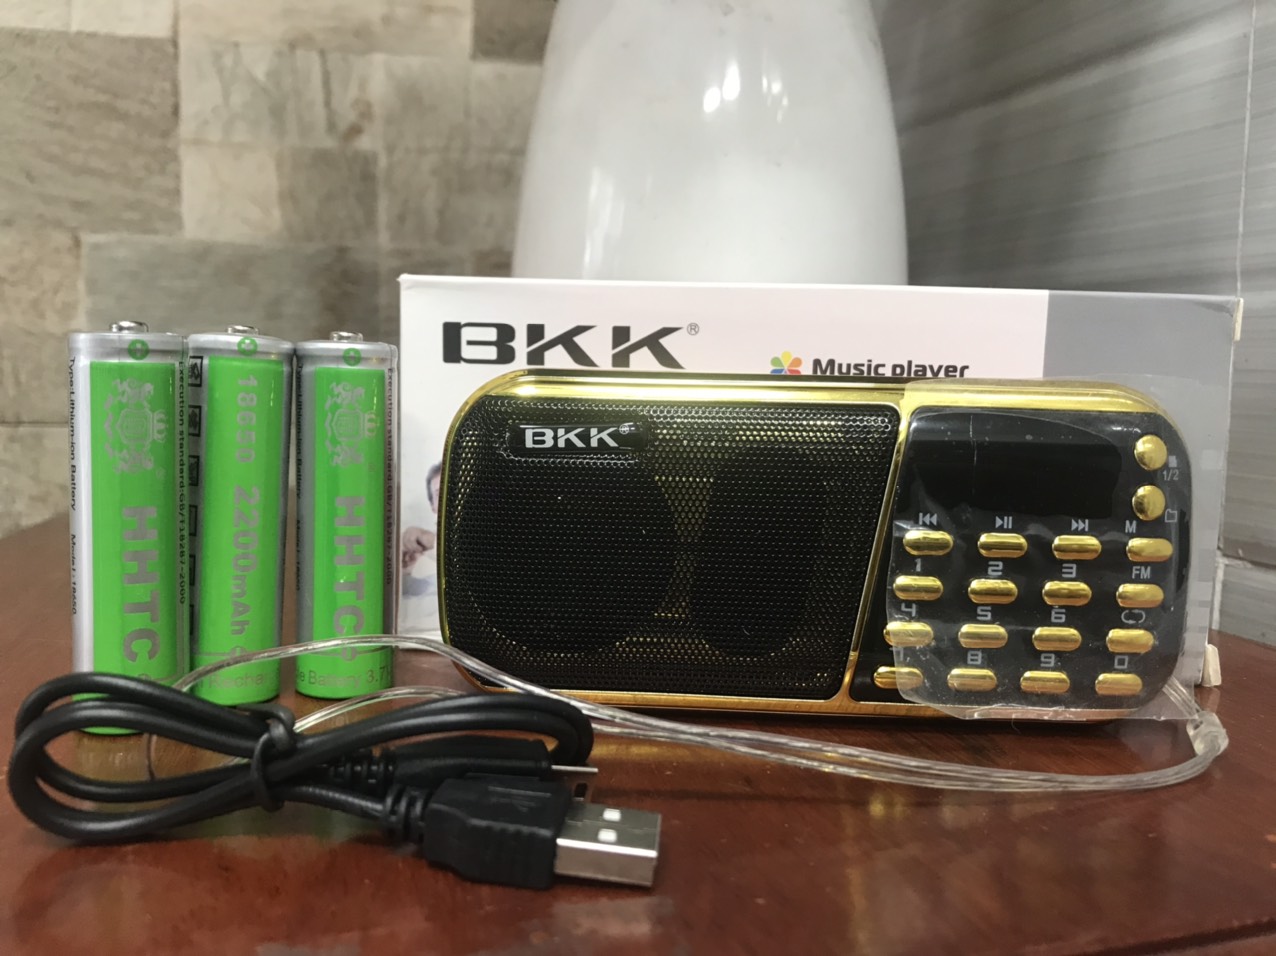 Loa pháp BKK B853 3 pin tròn 2.200mAh siêu trâu chính hãng Nghe Kinh Phật Nhạc Thẻ Nhớ USB [BH 6 tháng]